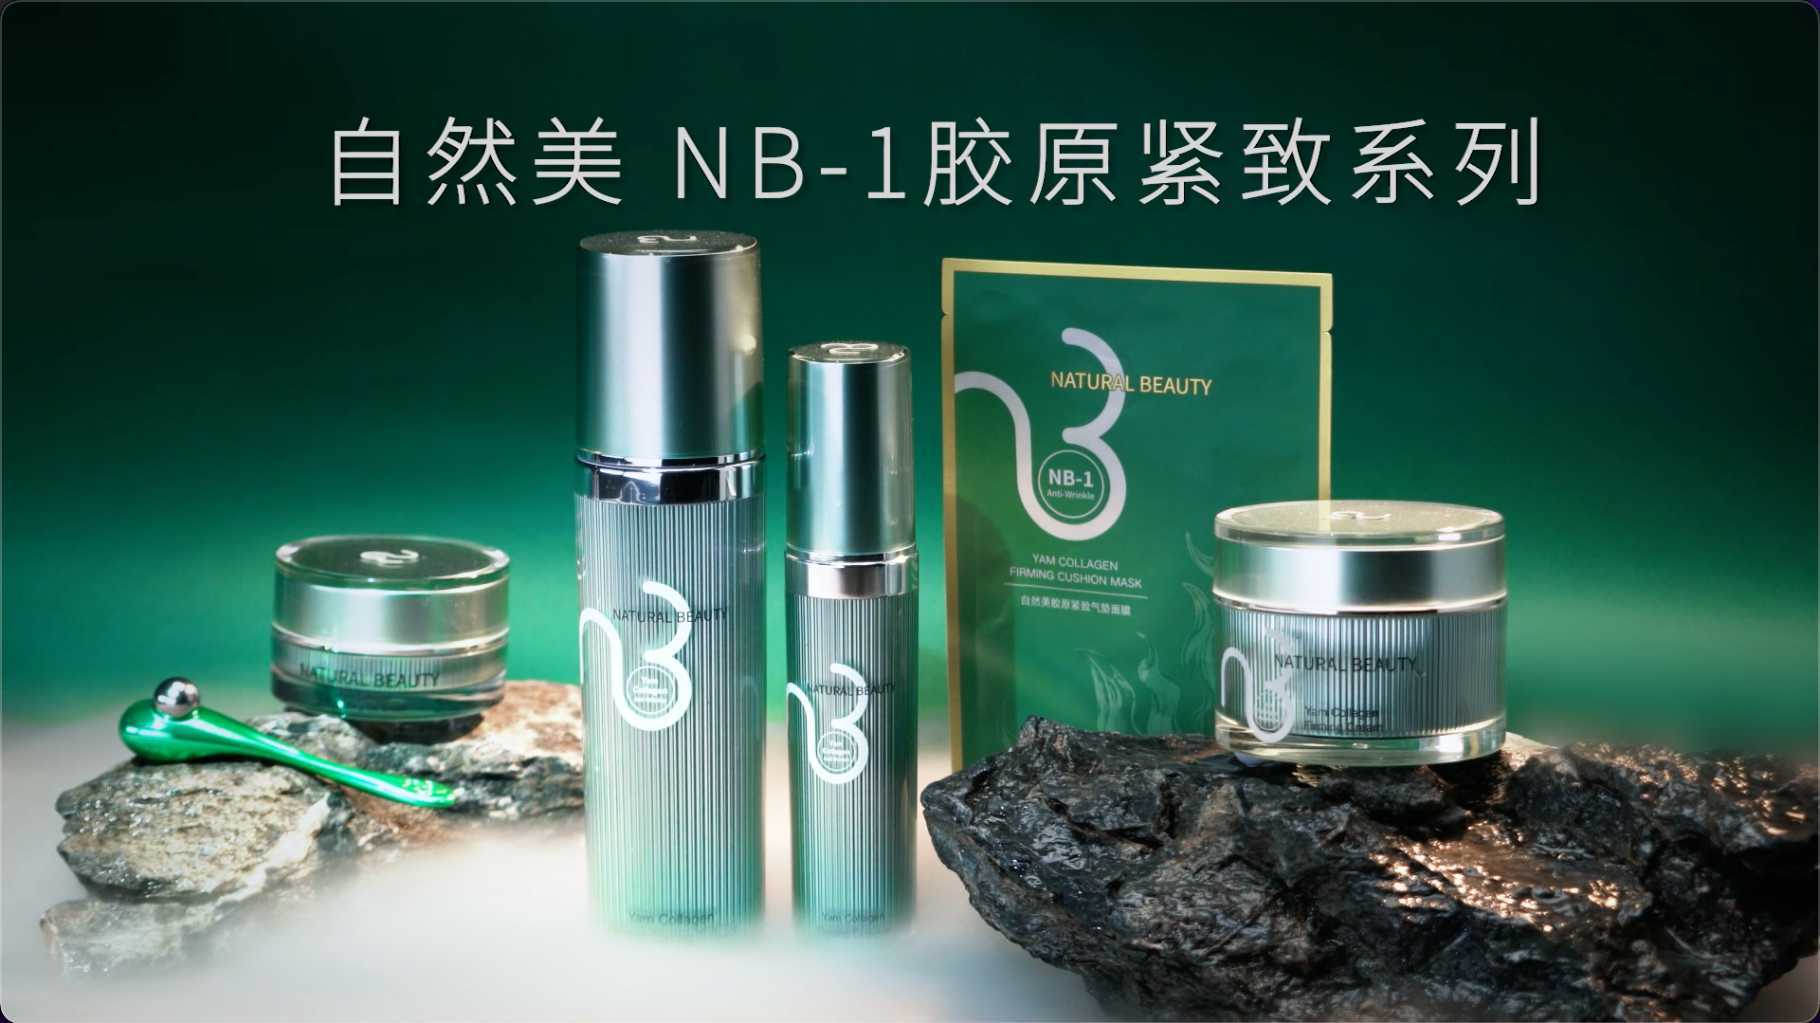 自然美NB-1胶原紧致系列 产品广告